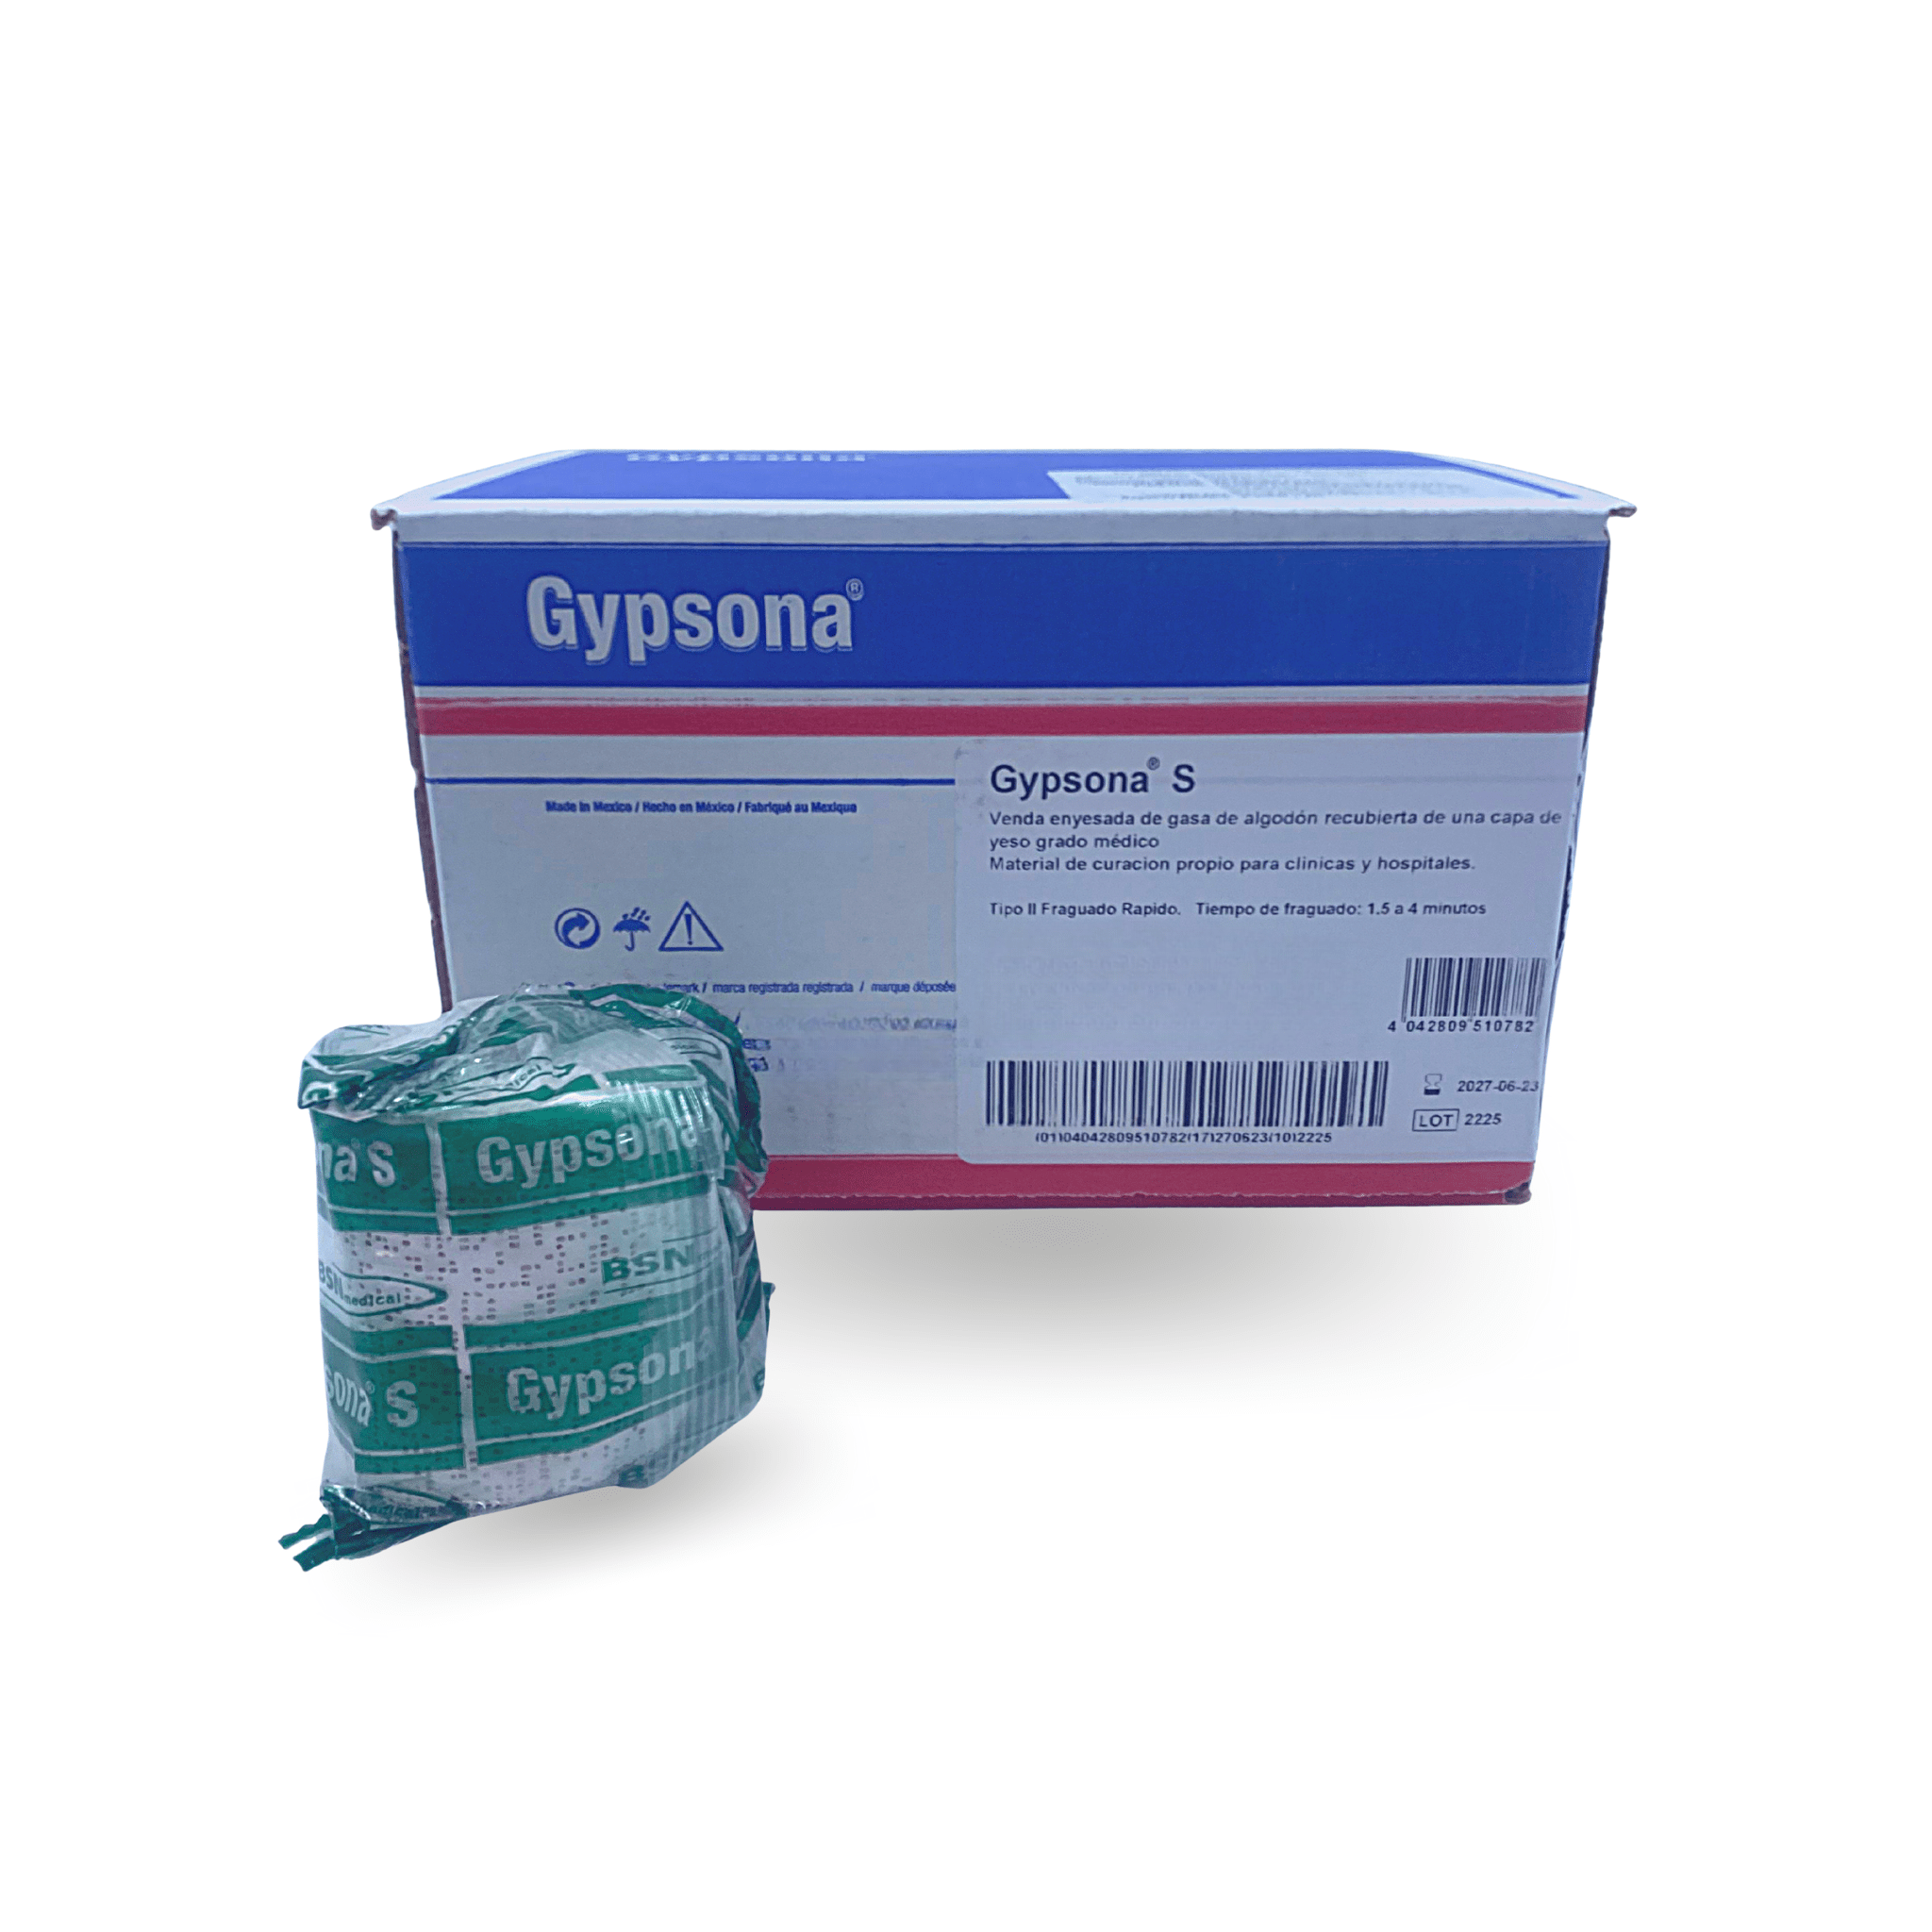 Venda de Yeso – Hypsona – Medicox LTDA